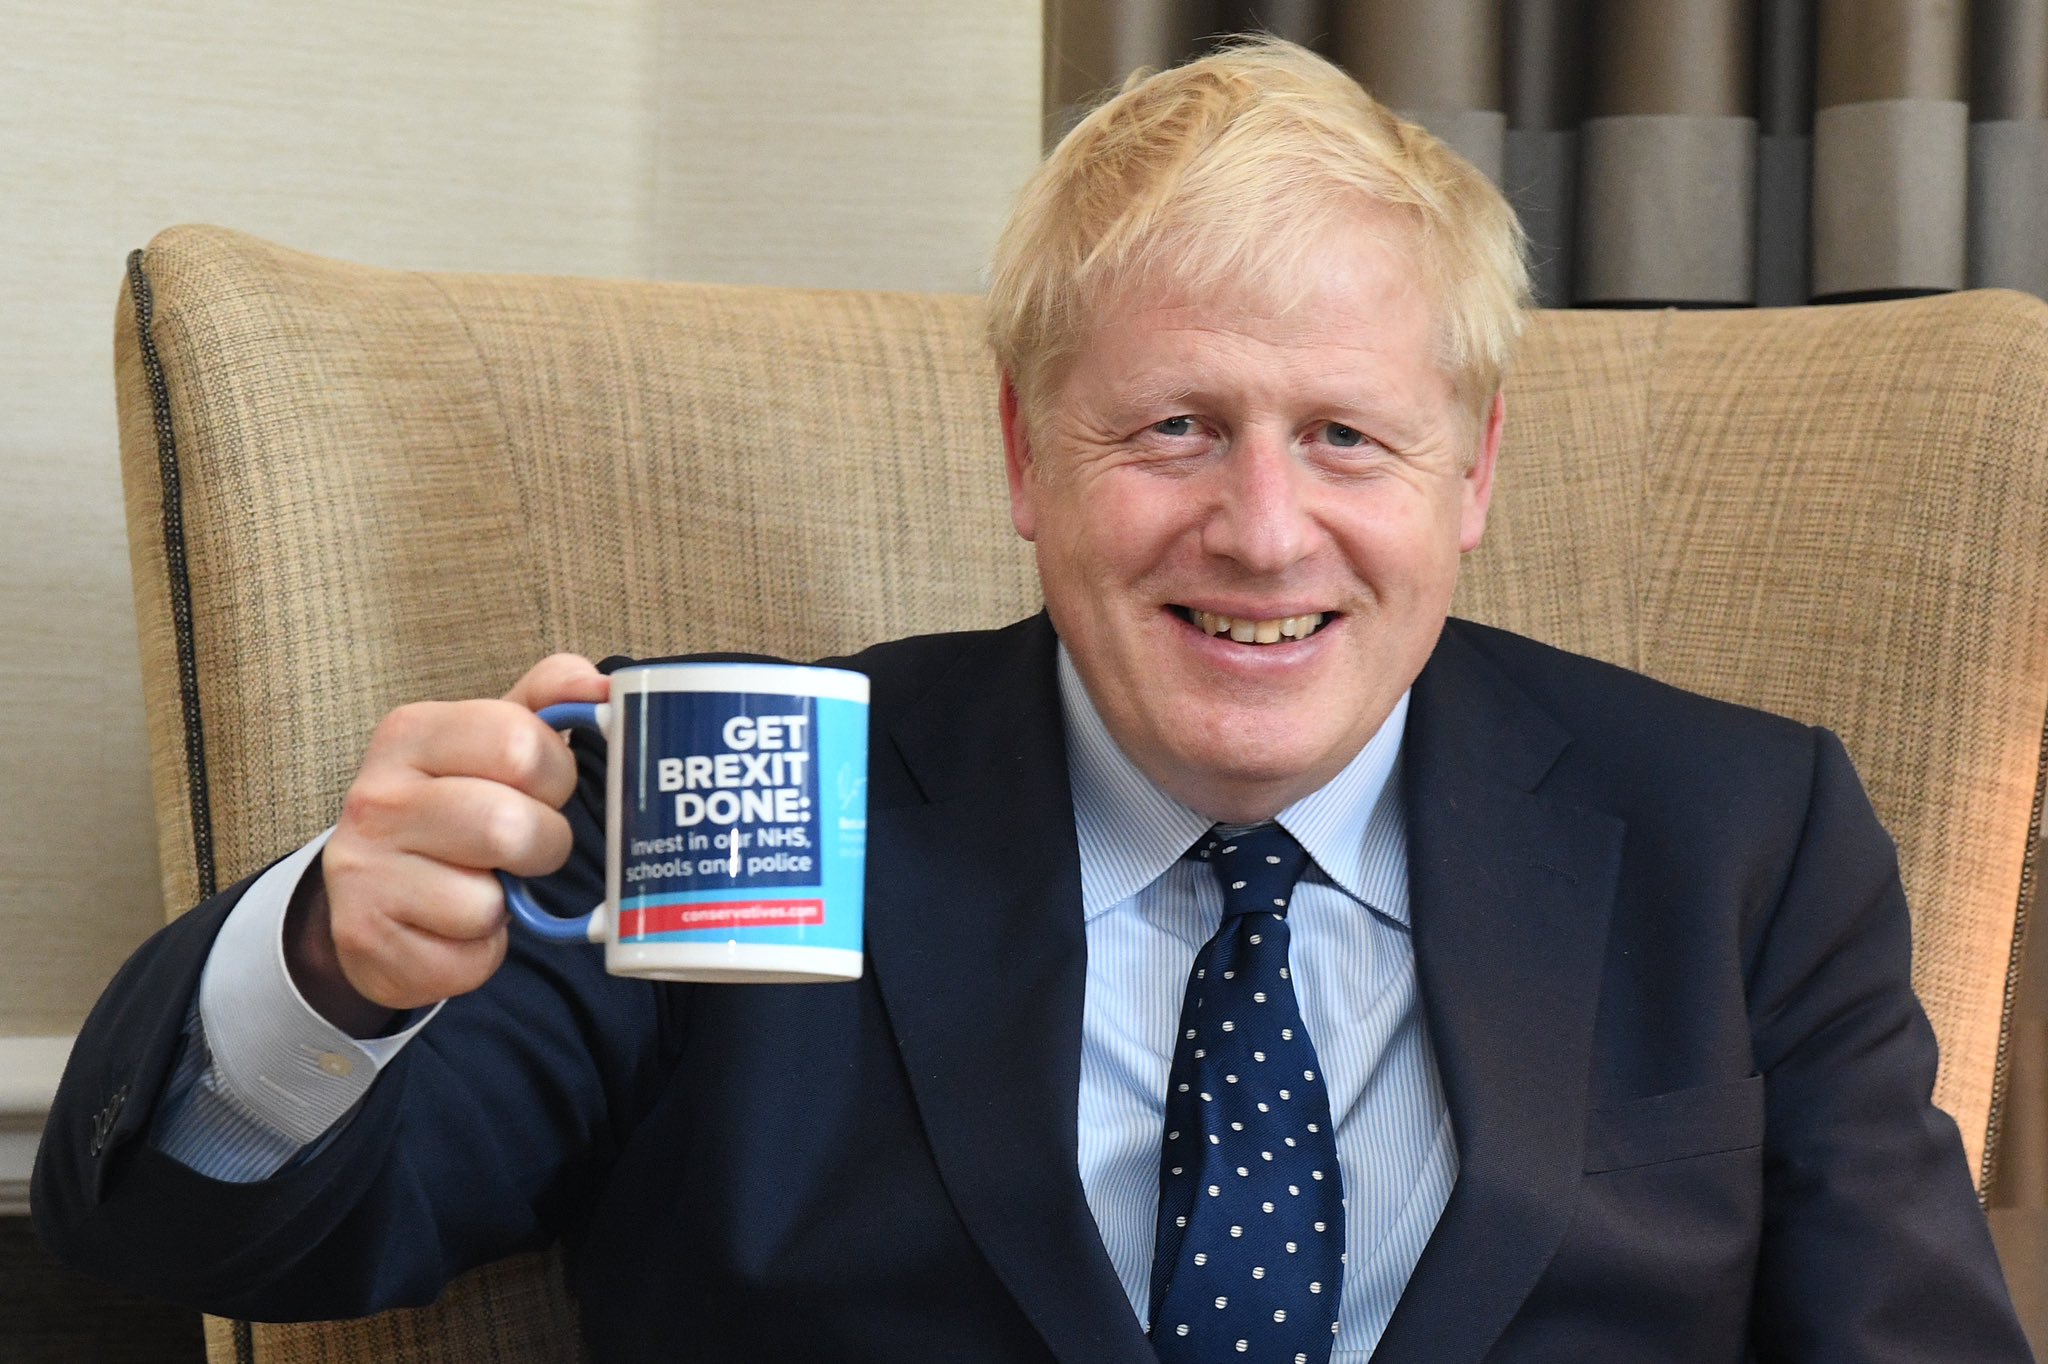 "Terminemos el Brexit", dice una taza de café que sostiene Boris Johnson. Foto: Twitter / Boris Johnson